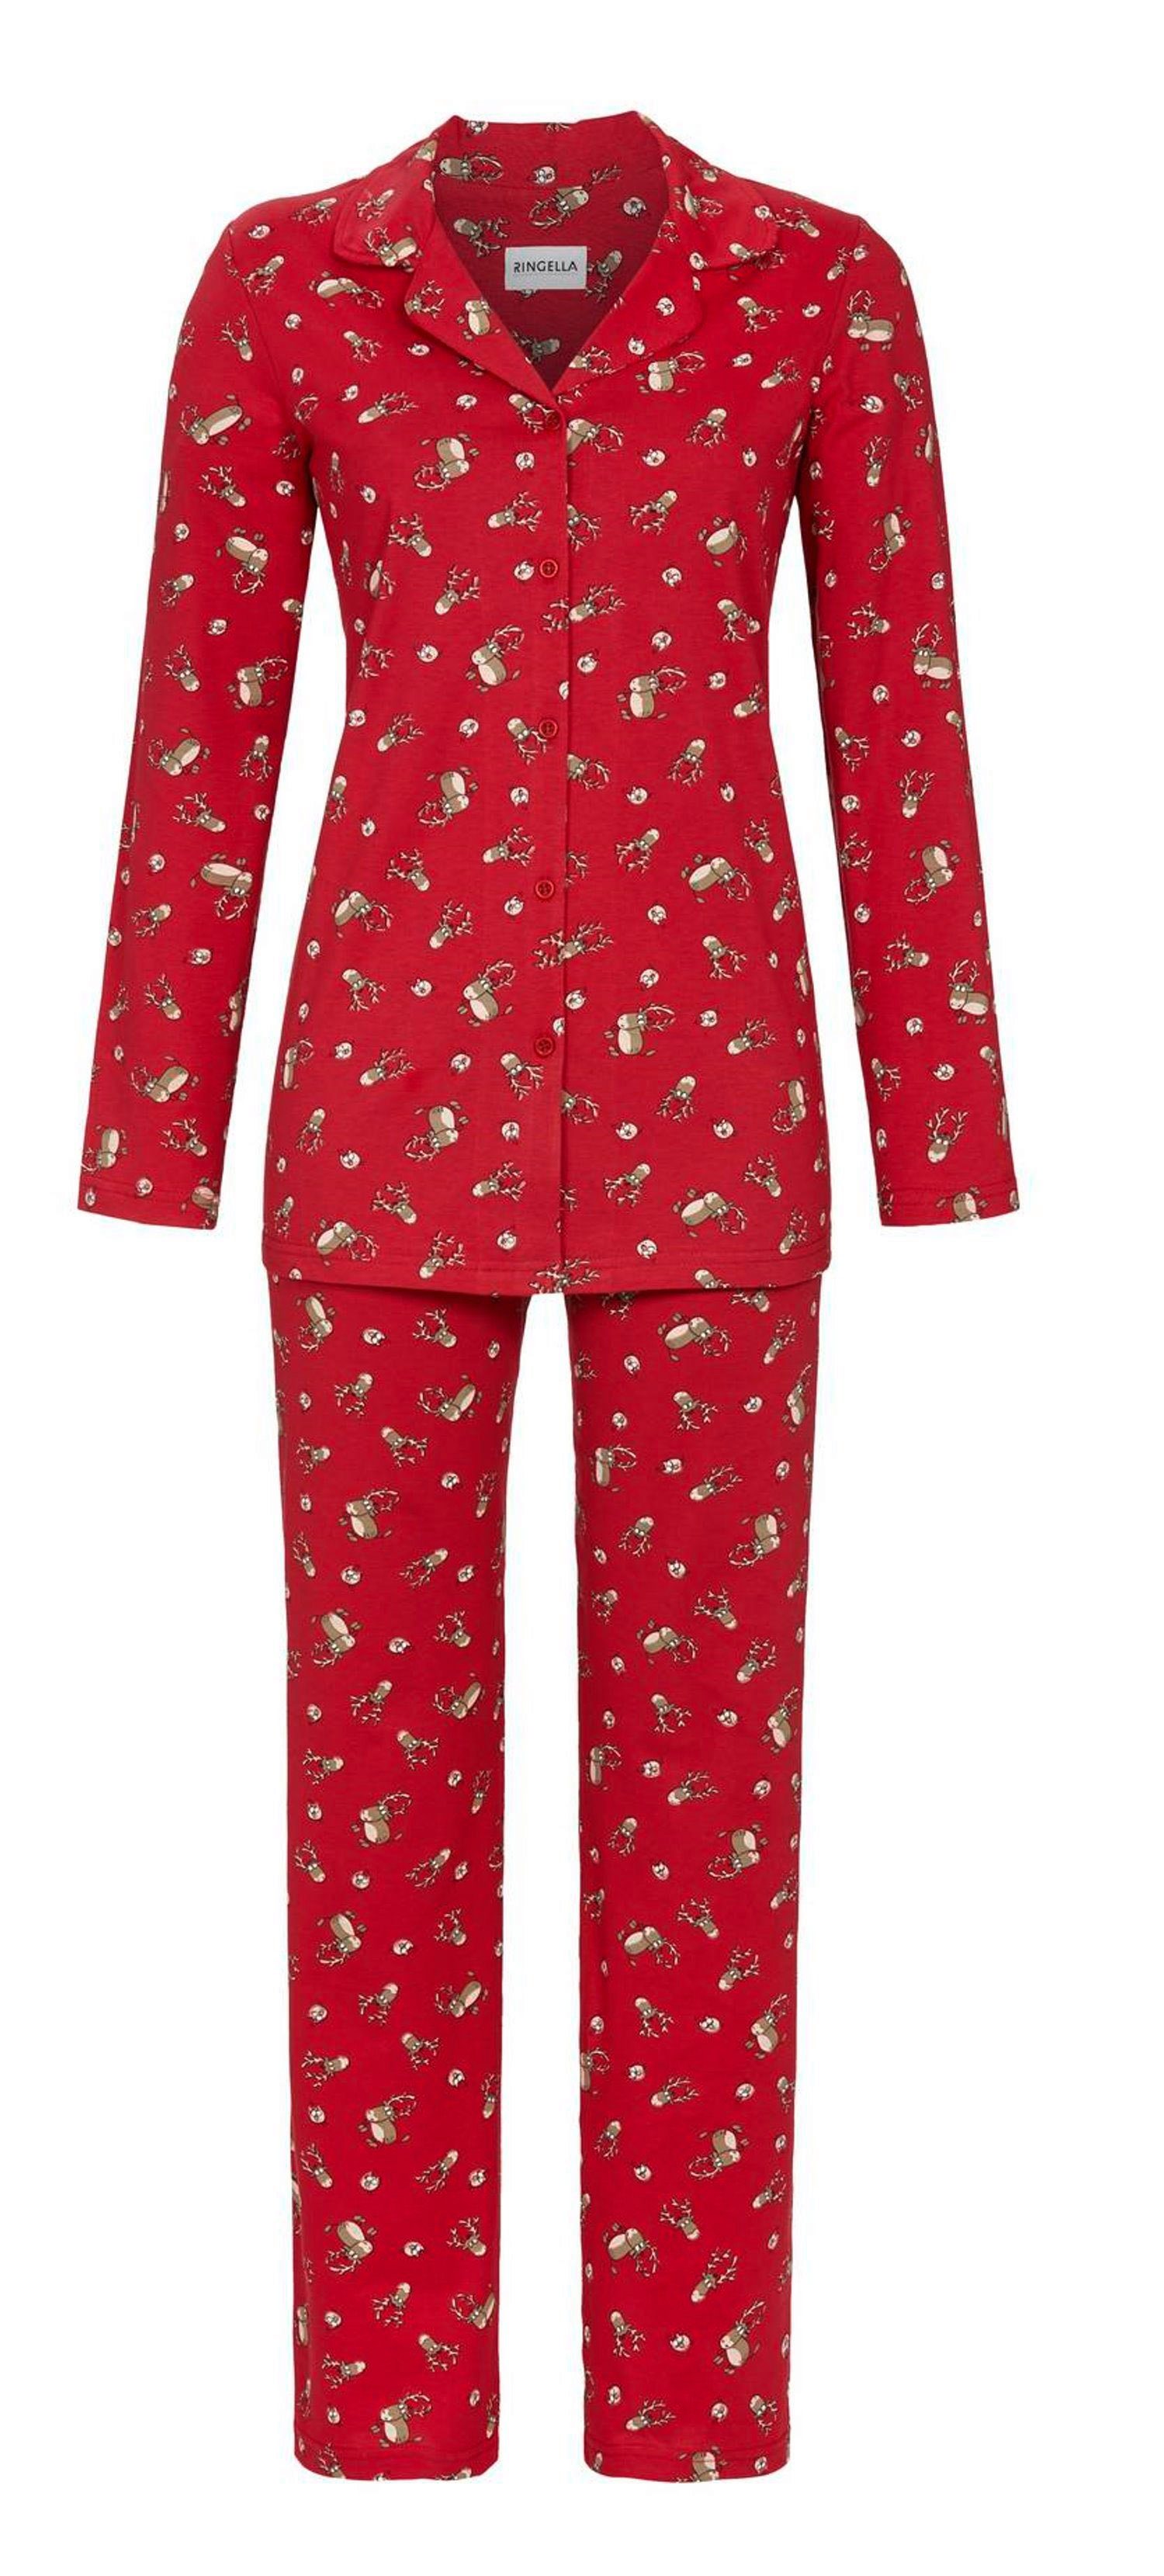 Ringella Pyjama Ringella Damen Pyjama mit Elchen (Schlafanzug, 2 tlg) Auch in großen Größen Baumwolle rot